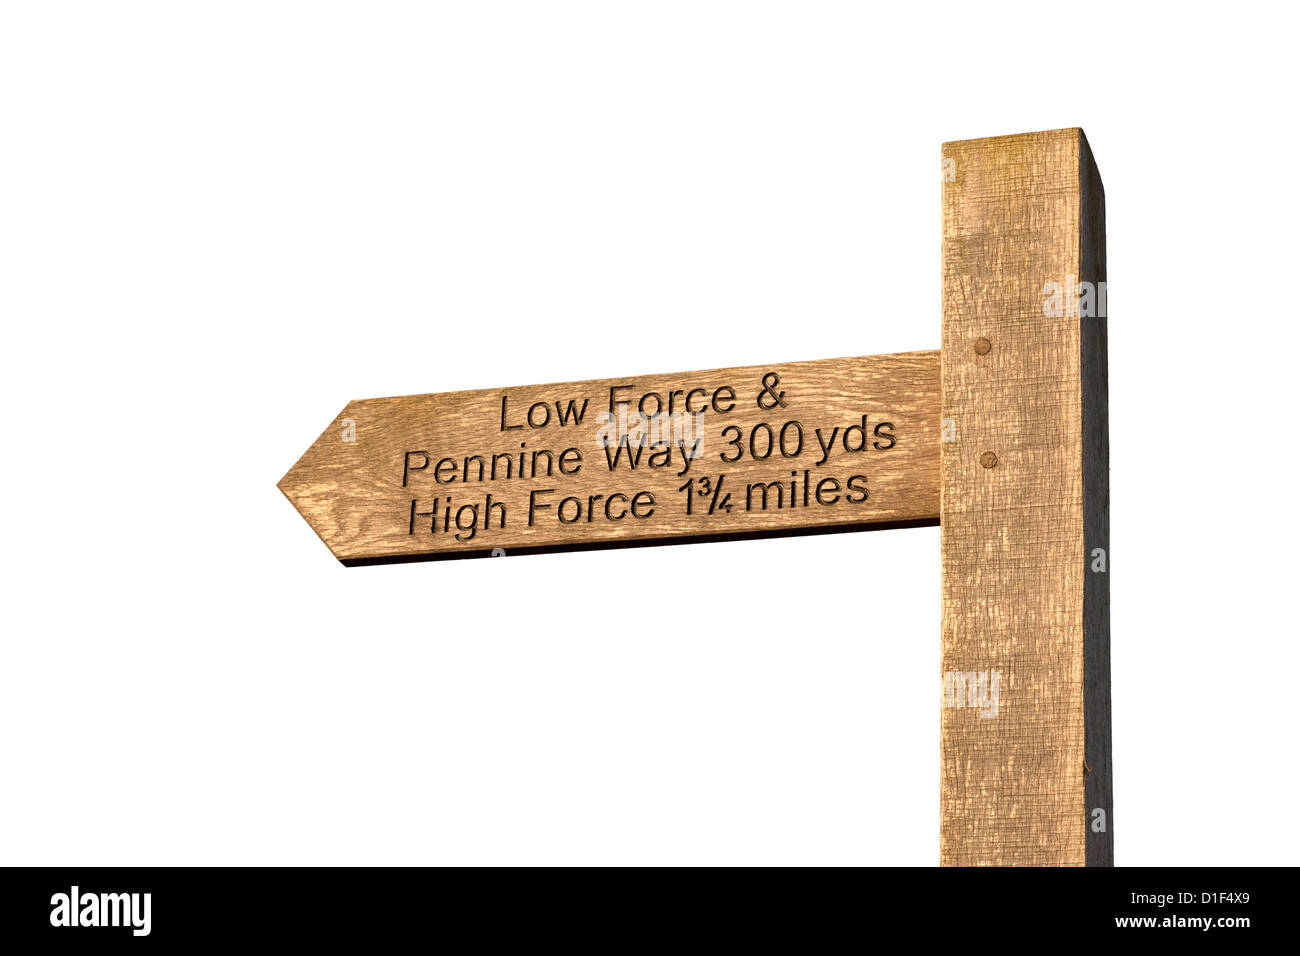 Tagliare fuori un segno posto dirigere gli escursionisti per forza bassa, alta forza e del The Pennine Way, Bowlees Teesdale superiore County Durham Regno Unito Foto Stock